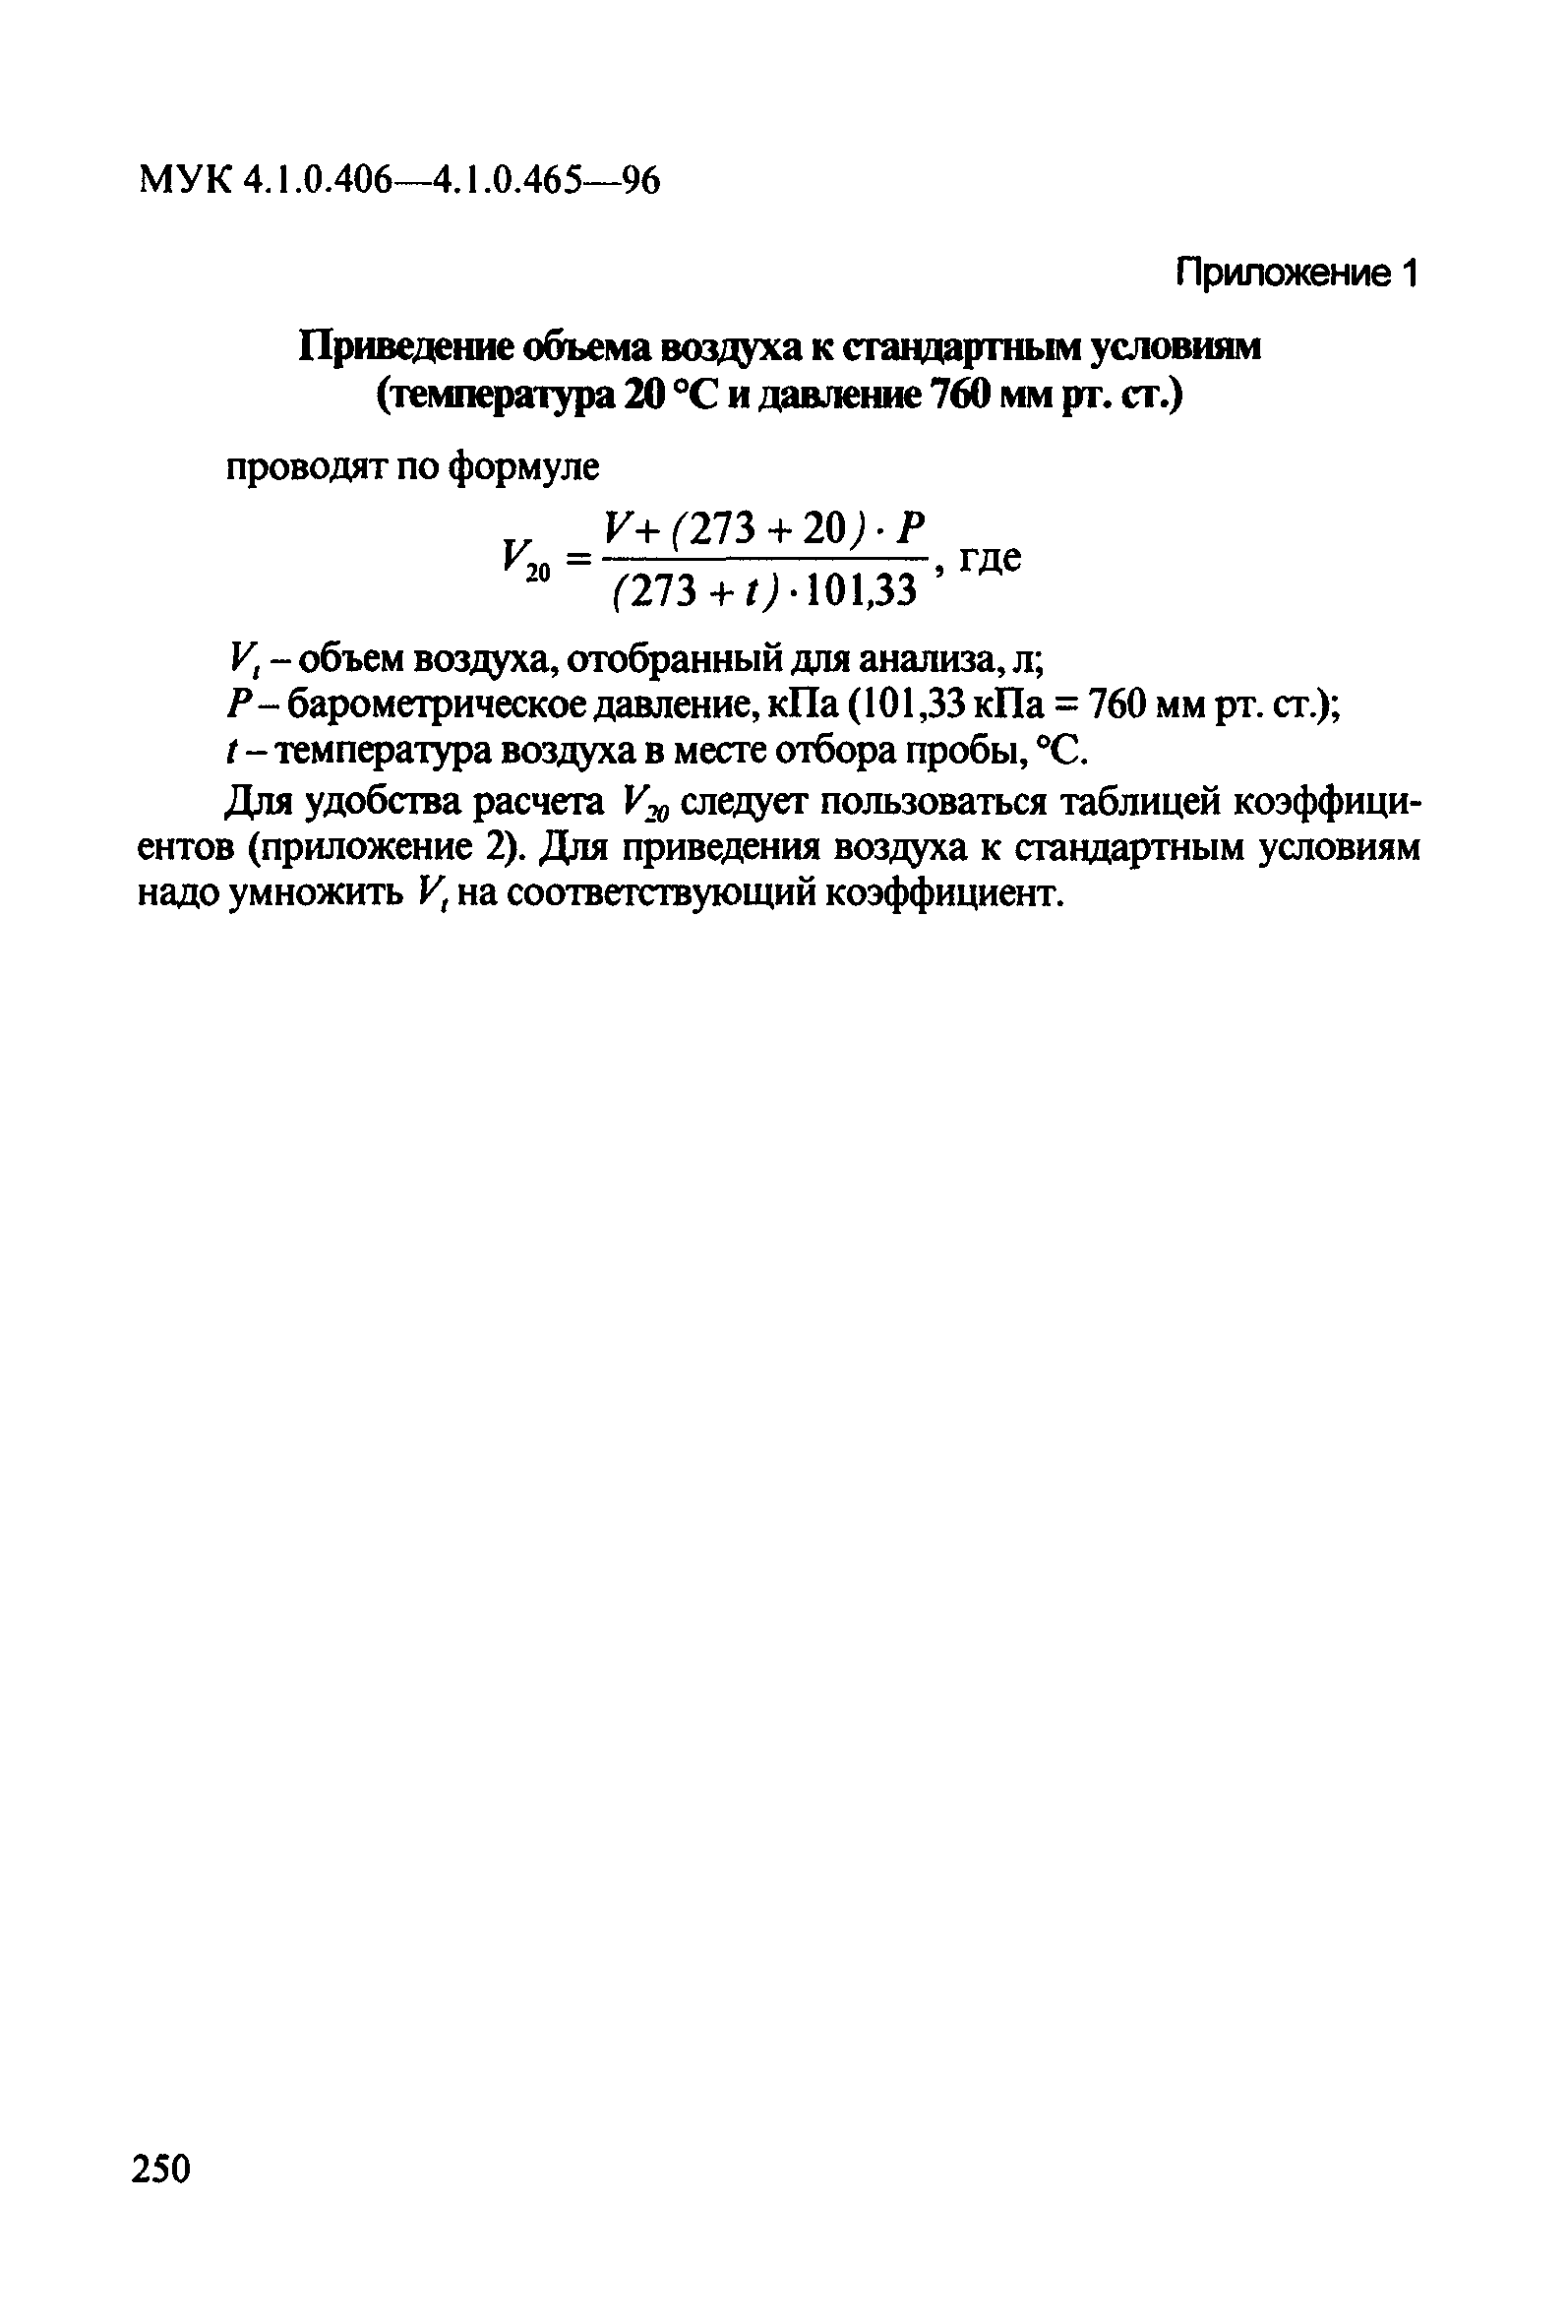 МУК 4.1.0.429-96